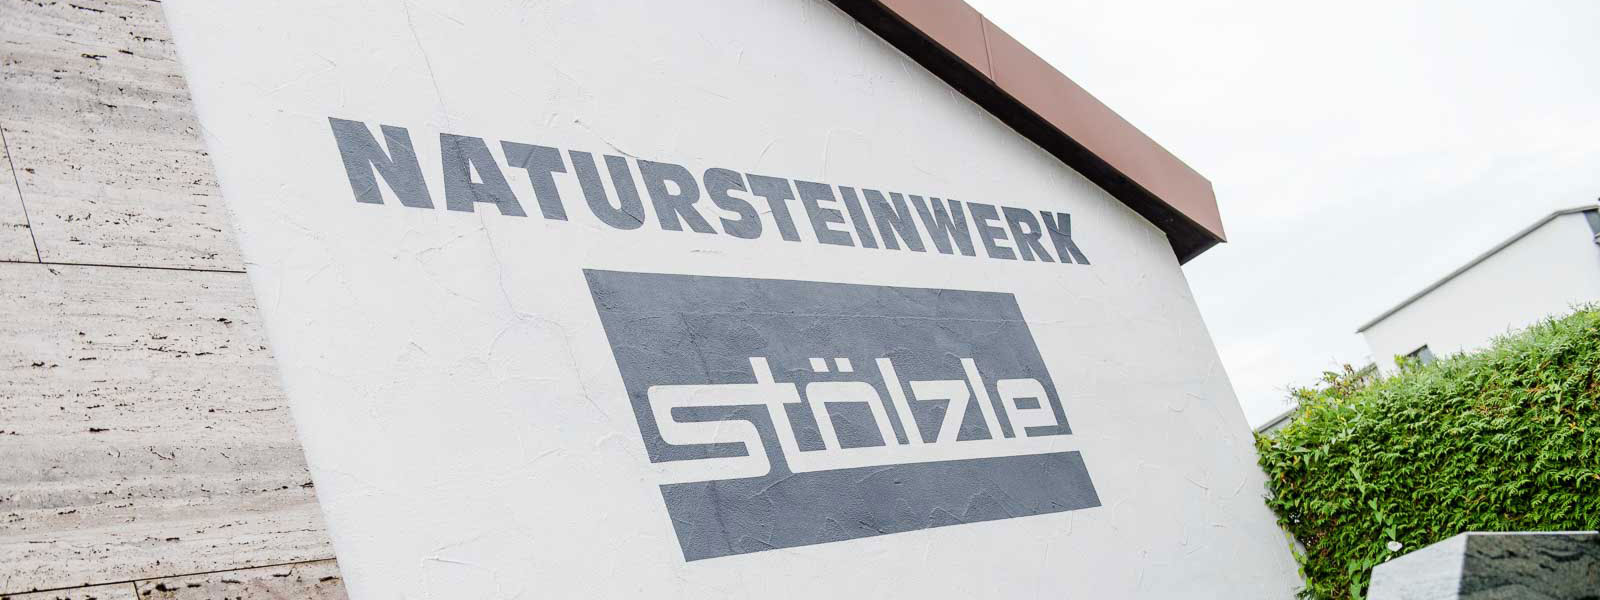 Nehmen Sie hier Kontakt auf zum Natursteinwerk Stölzle in Altenstadt/Iller, den Profis für Marmor und Granit. Handwerkstradition seit über 110 Jahren. 